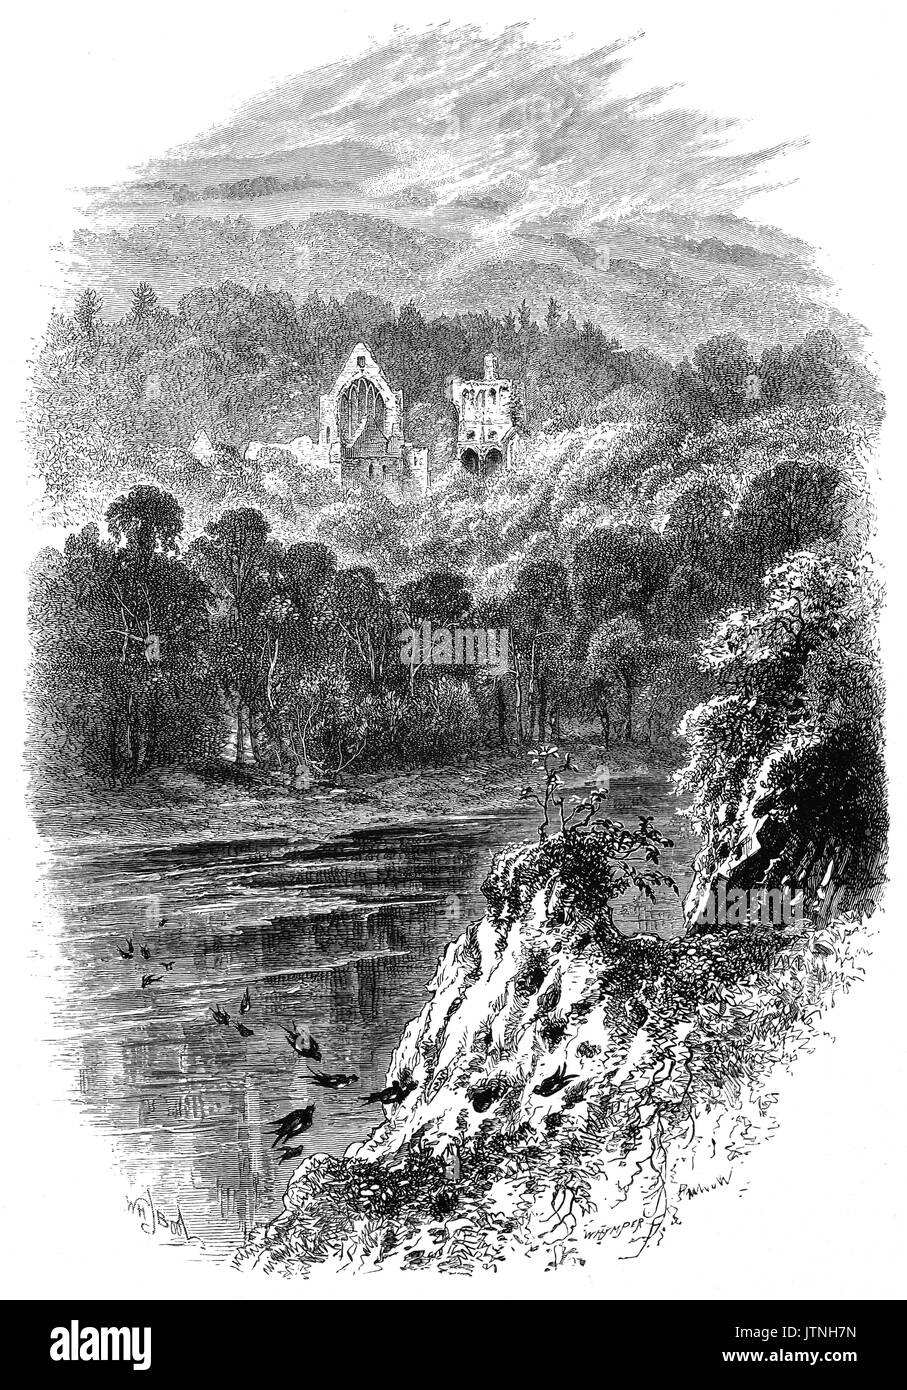 1870 : Abbaye de Dryburgh, sur les rives de la rivière Tweed. Elle a été fondée au xiie siècle, puis brûlé par les troupes anglaises en 1322, après quoi il n'a été rétabli qu'à être de nouveau brûlé par Richard II en 1385. Il a prospéré dans le quinzième siècle, finalement détruit en 1544, brièvement pour survivre jusqu'à la réforme écossaise. Sir Walter Scott et Douglas Haig sont enterrés dans ses motifs. Le Roxburghshire, Ecosse, Royaume-Uni. Banque D'Images